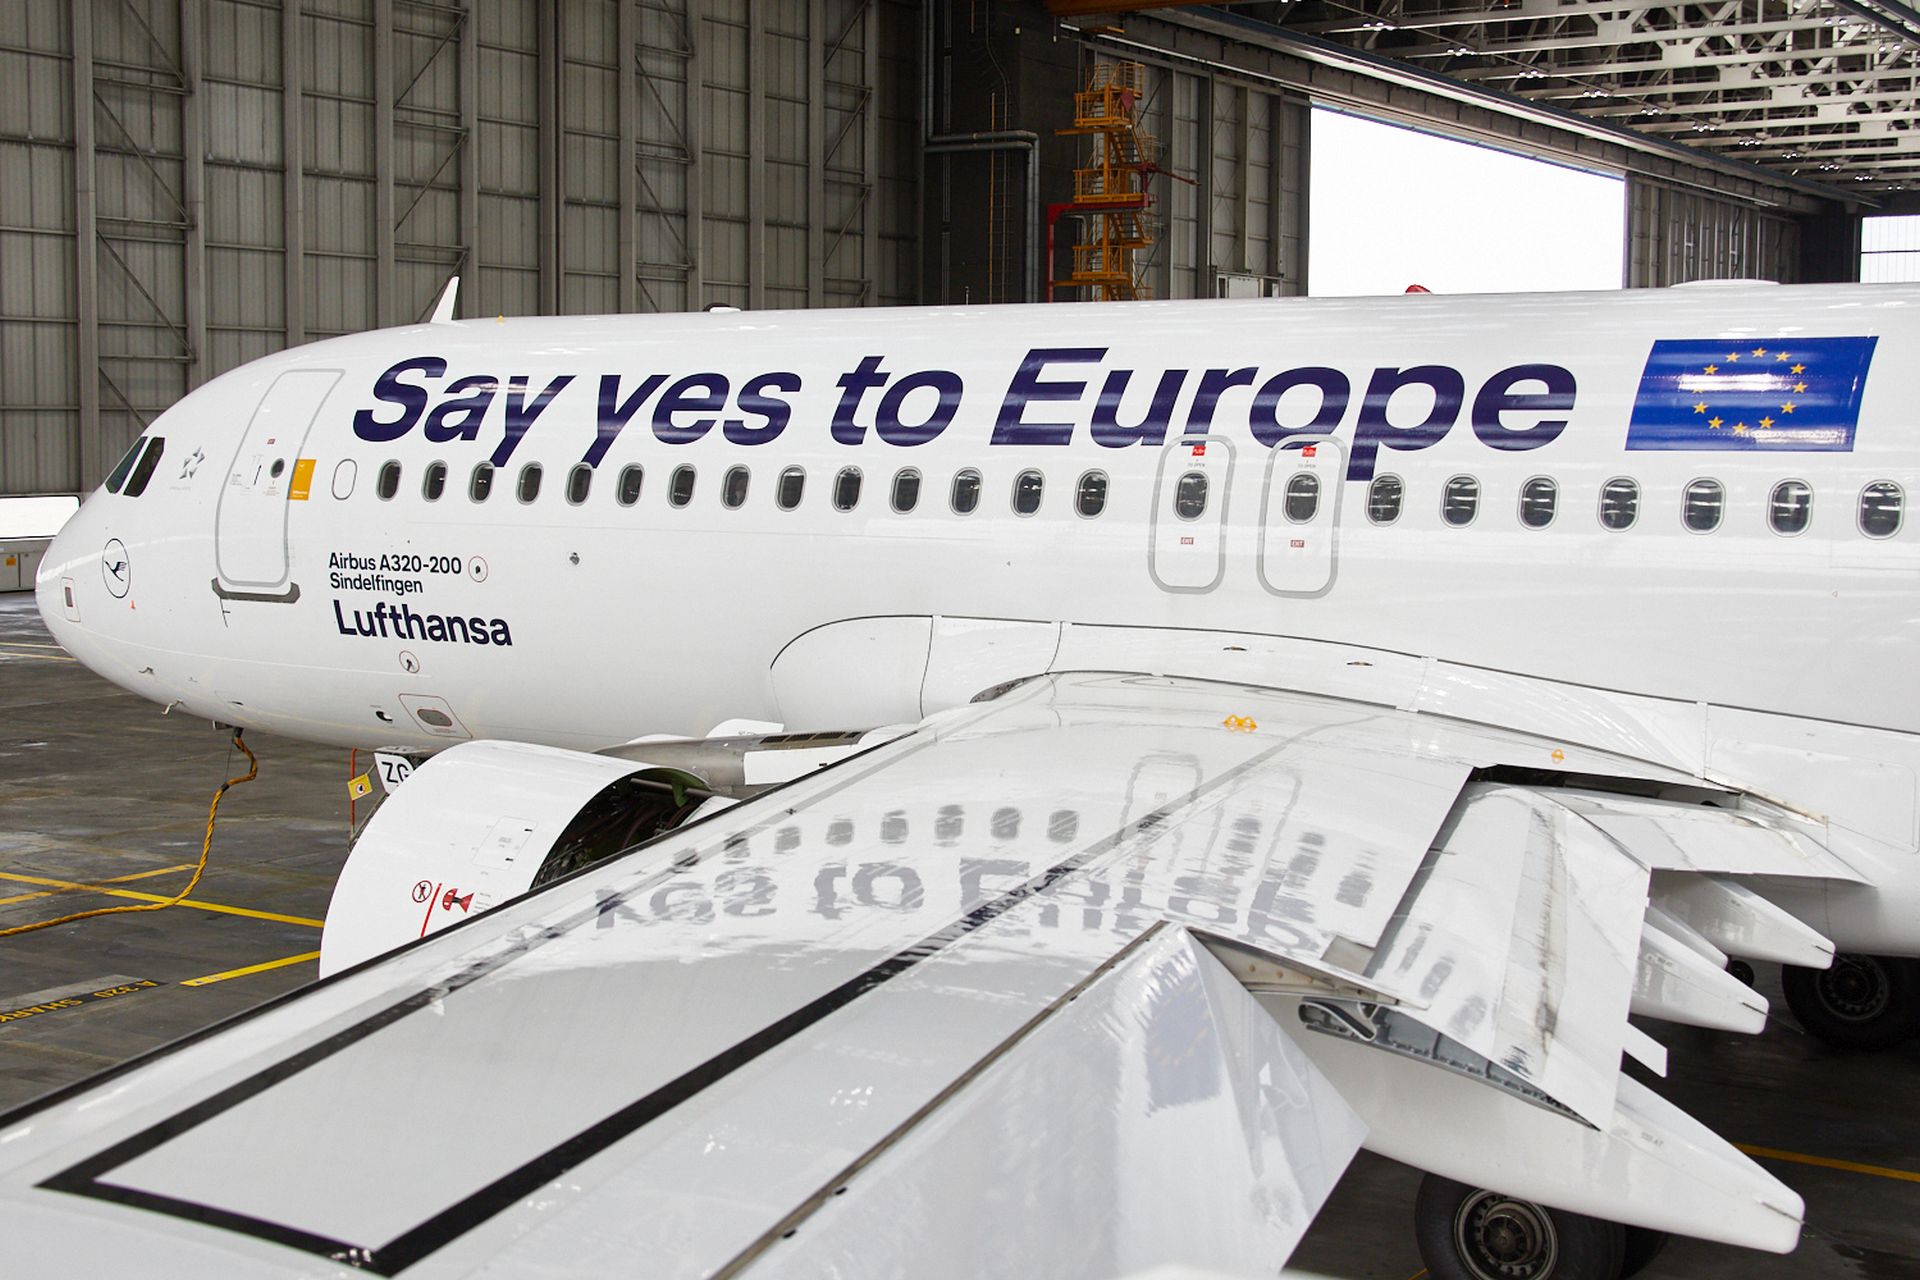 Airbus A320 v polepu propagujícím evropské volby. Foto: Lufthansa